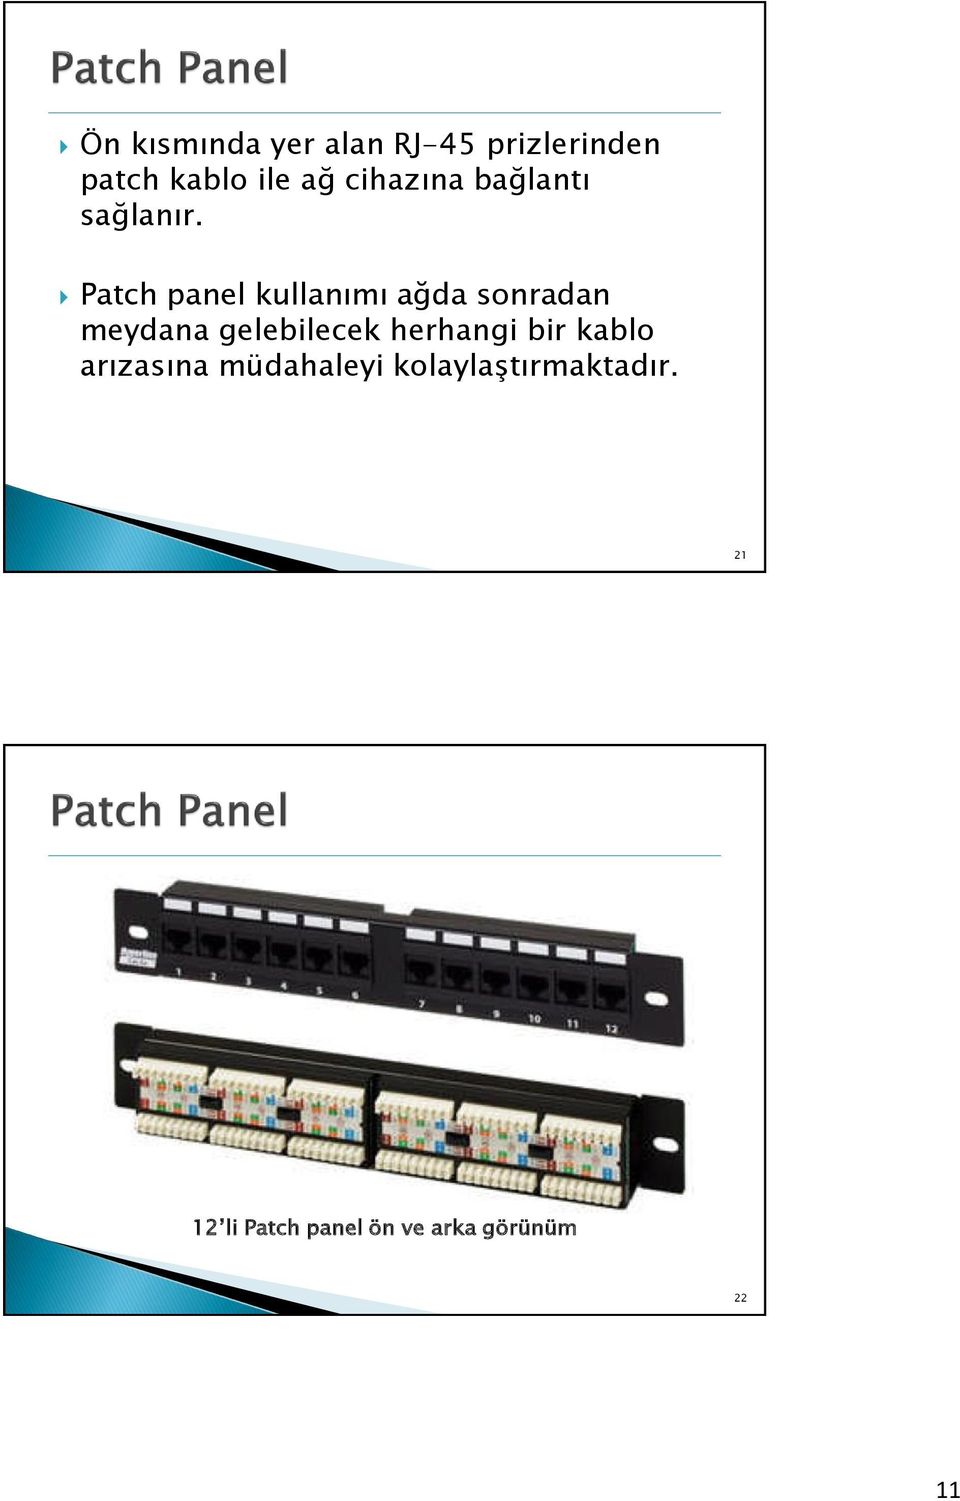 Patch panel kullanımı ağda sonradan meydana gelebilecek herhangi